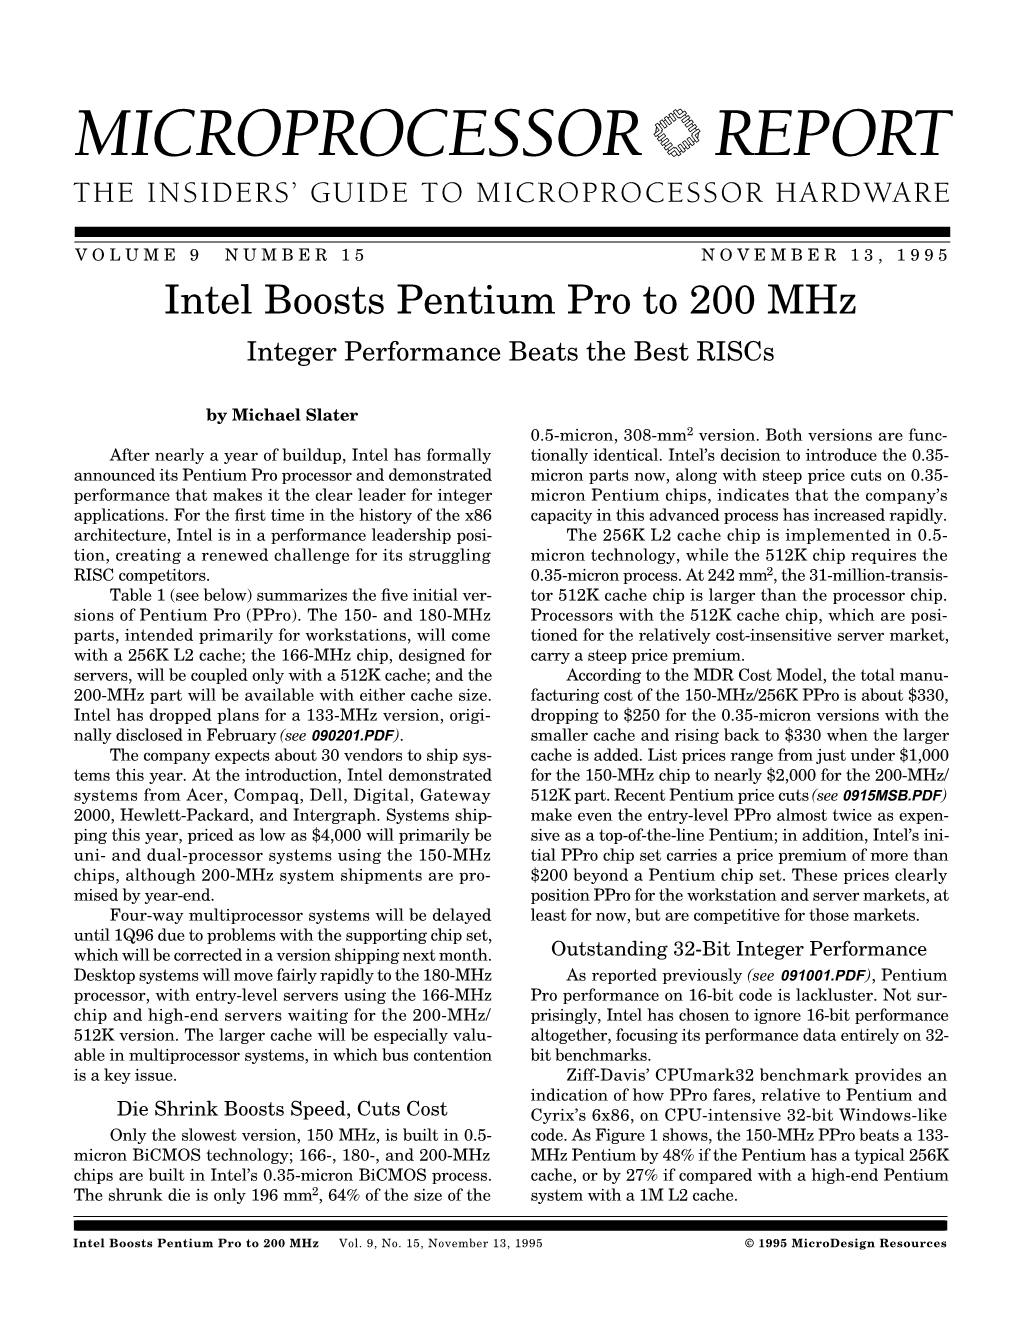 Intel Boosts Pentium Pro to 200 Mhz: 11/13/95